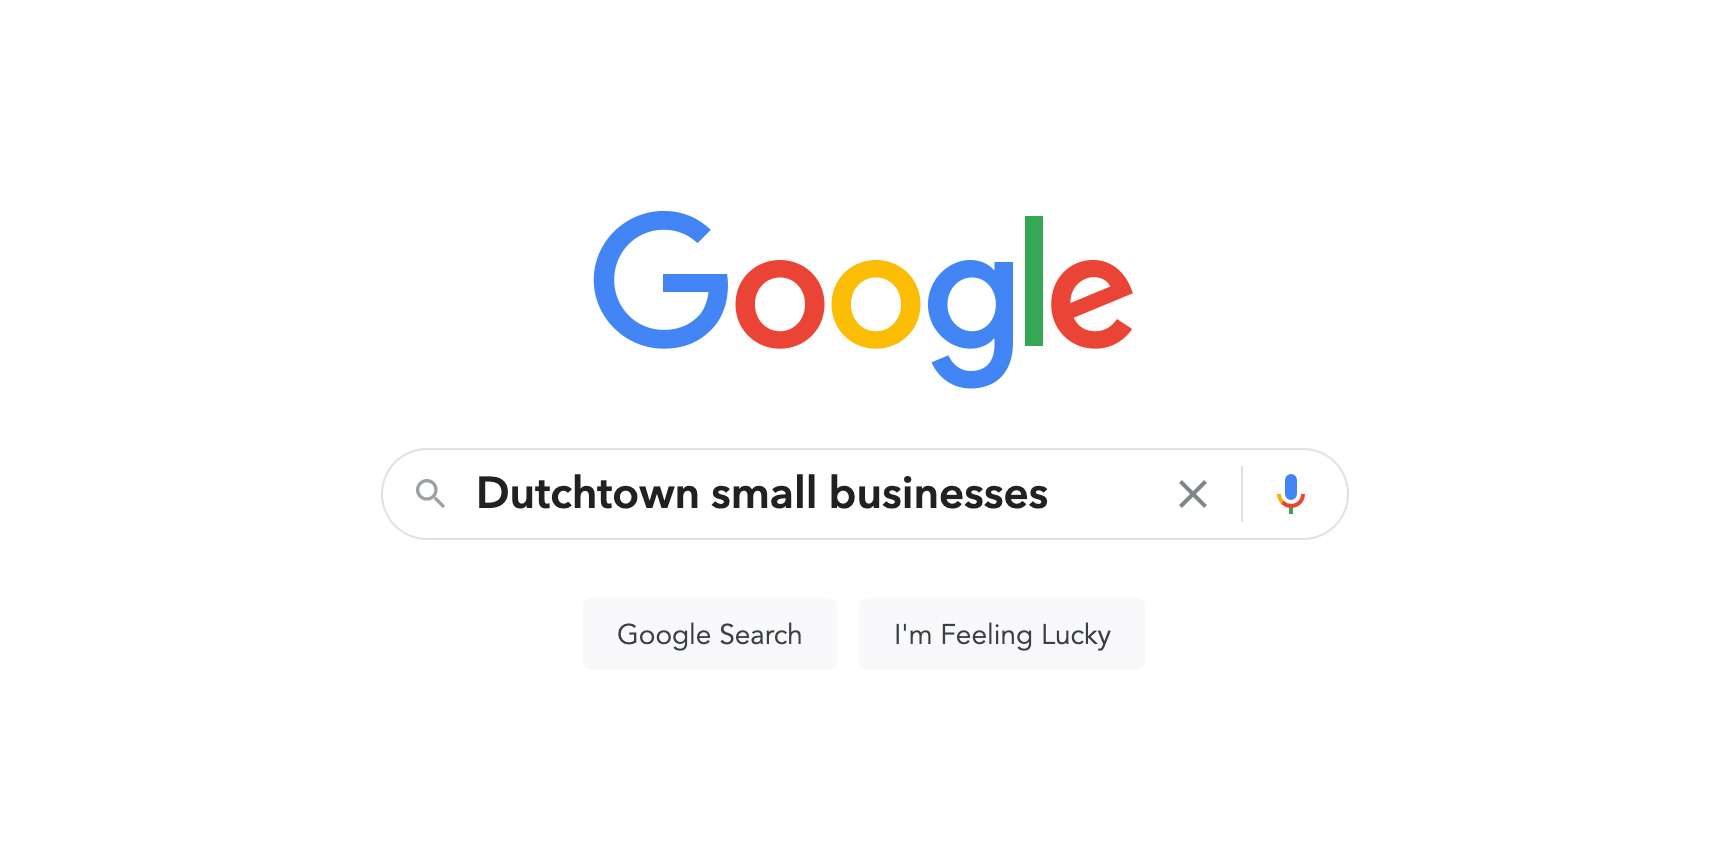 Google Doanh nghiệp của tôi: Hướng dẫn Cách đưa vào Danh sách Dutchtown